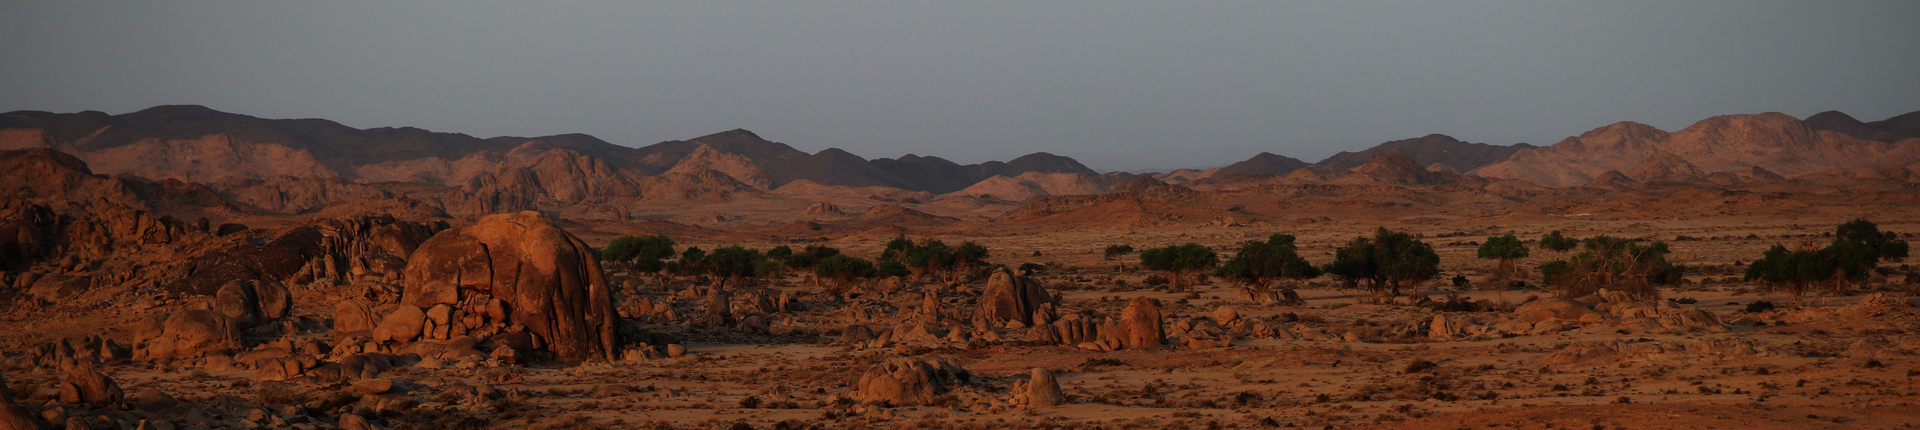 Wüste Gobi Foto: J. Wunderlich